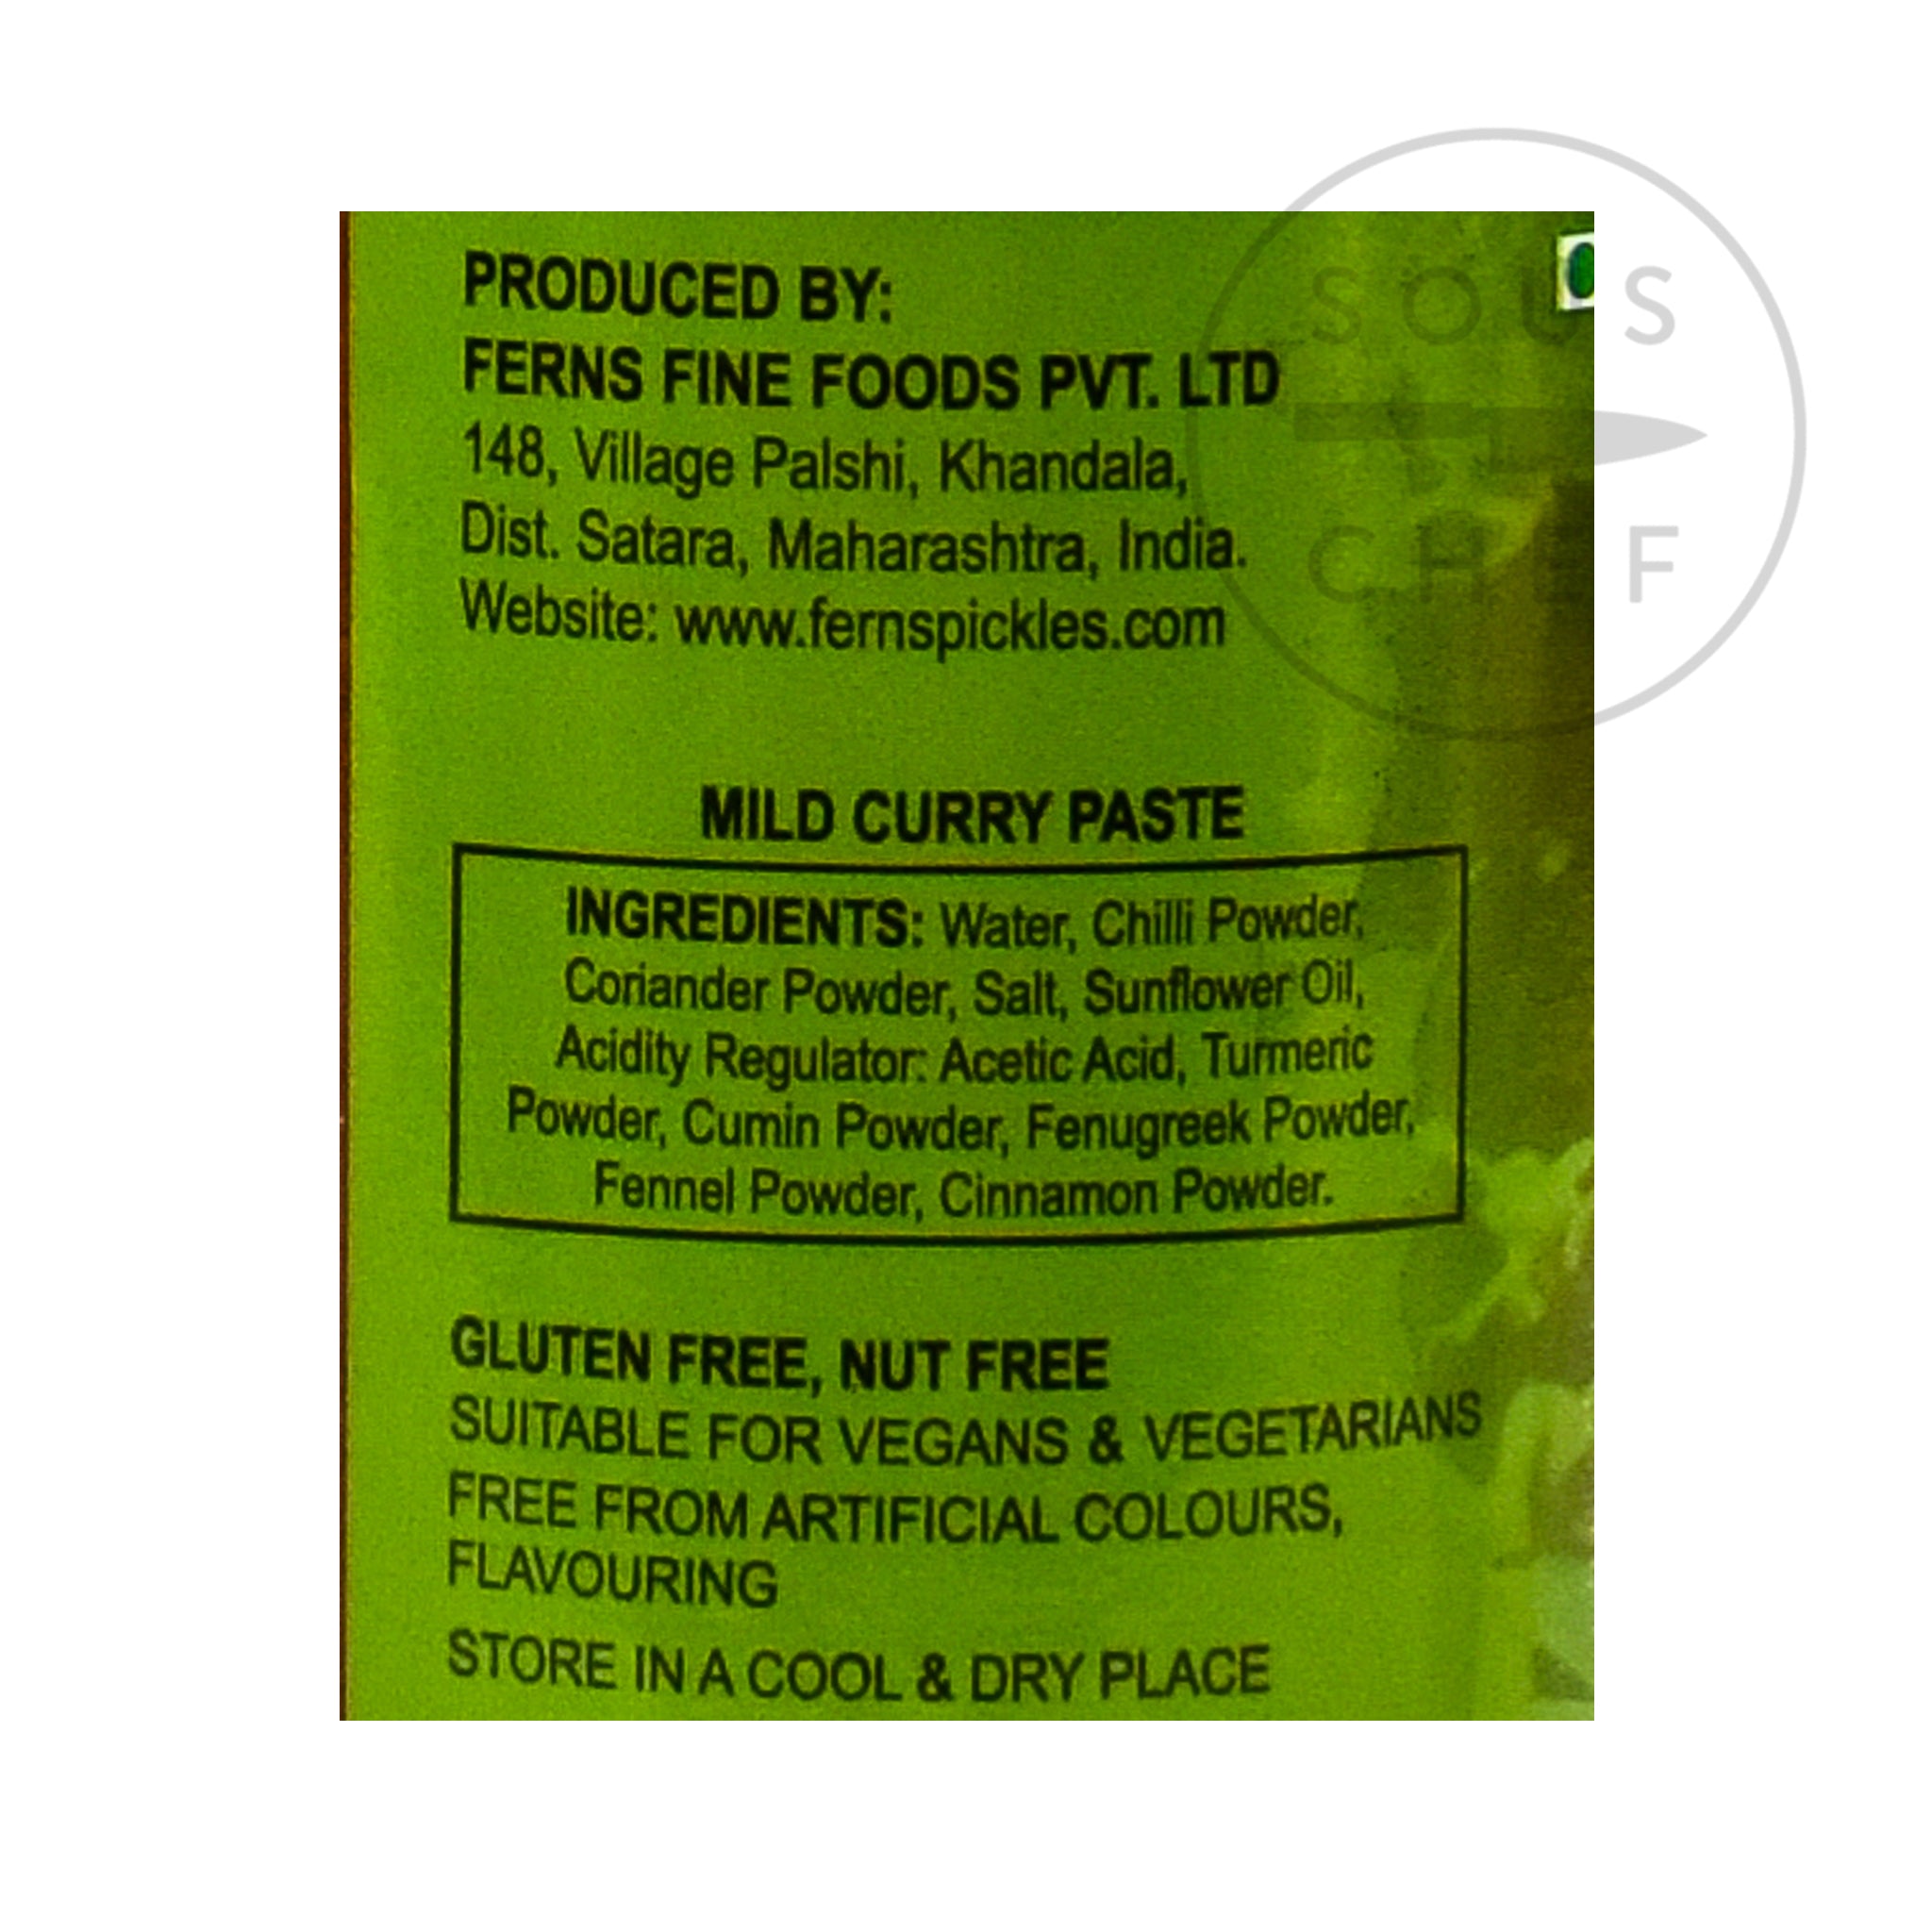 Ferns' Mild Curry Paste 380g ingredients